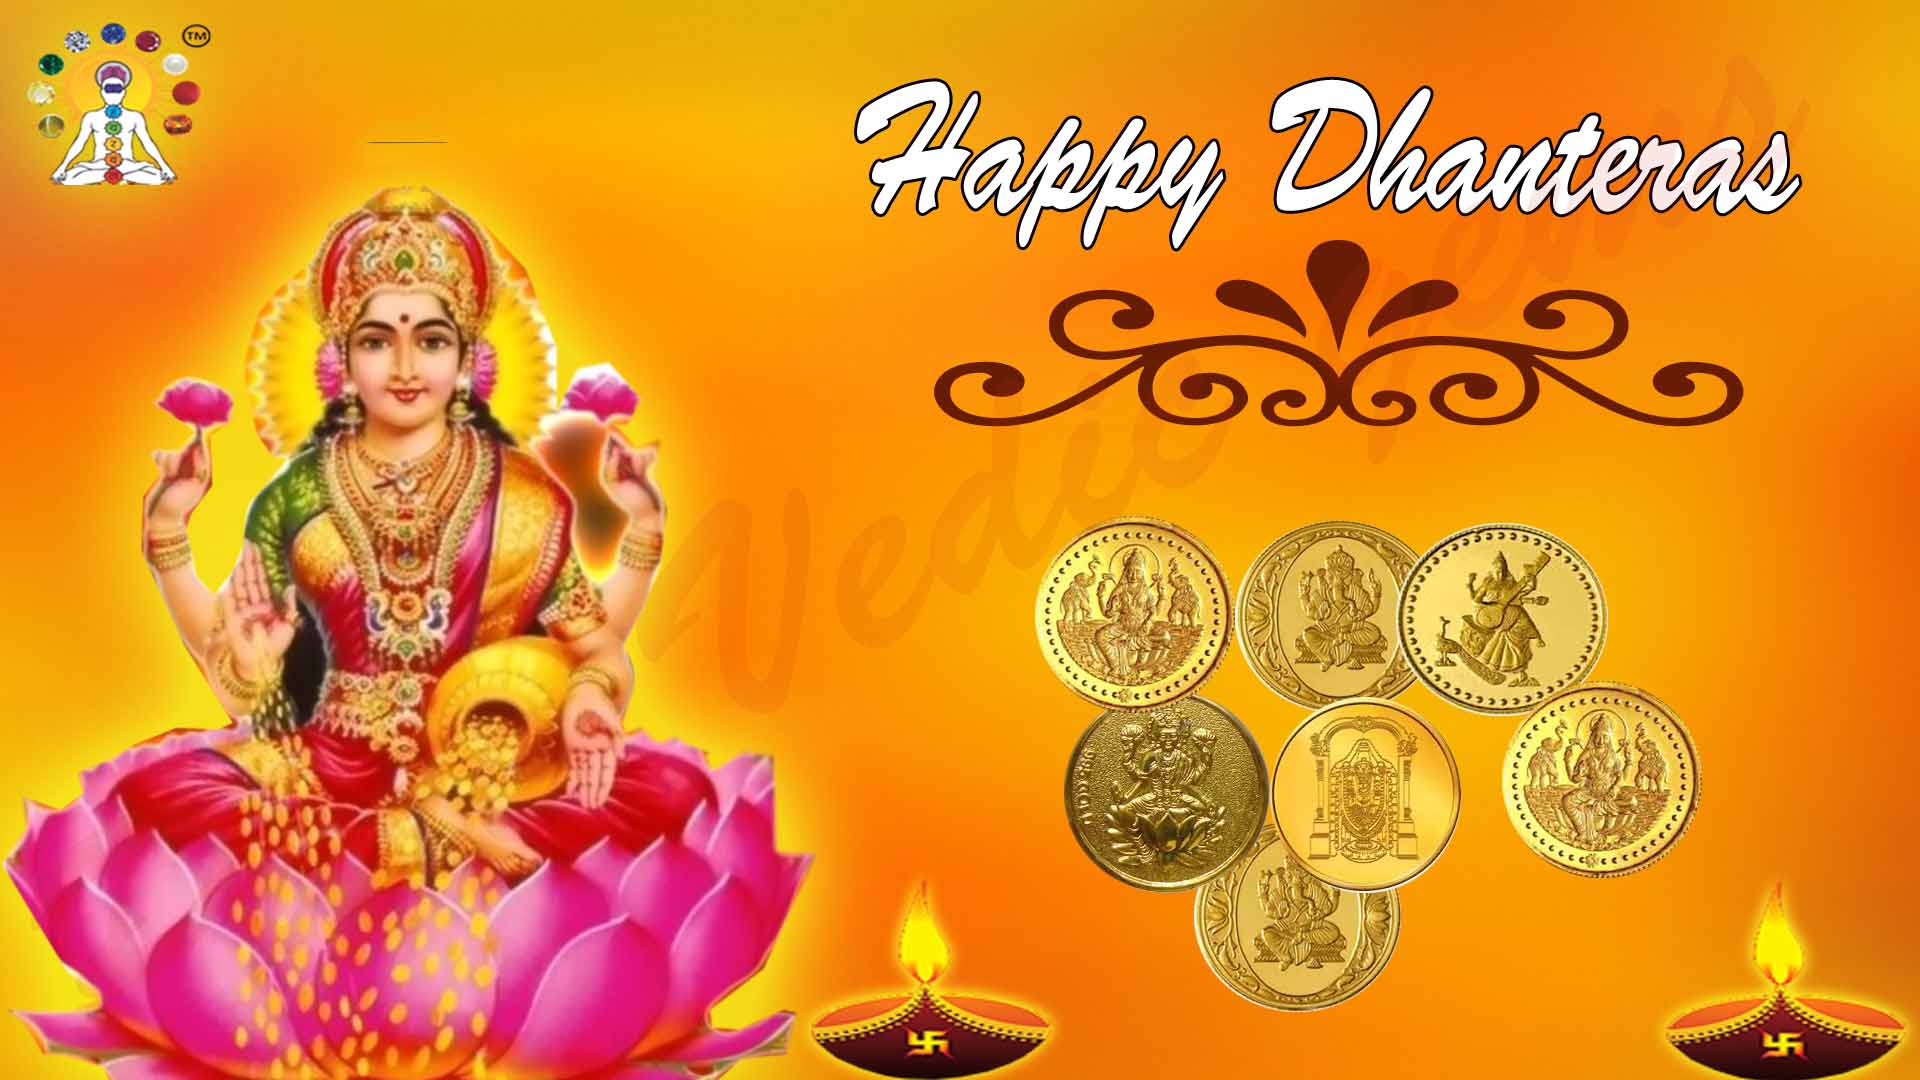 Happy Dhanteras Goddess Laxmi Image - Dhanteras Images With Laxmi - HD Wallpaper 